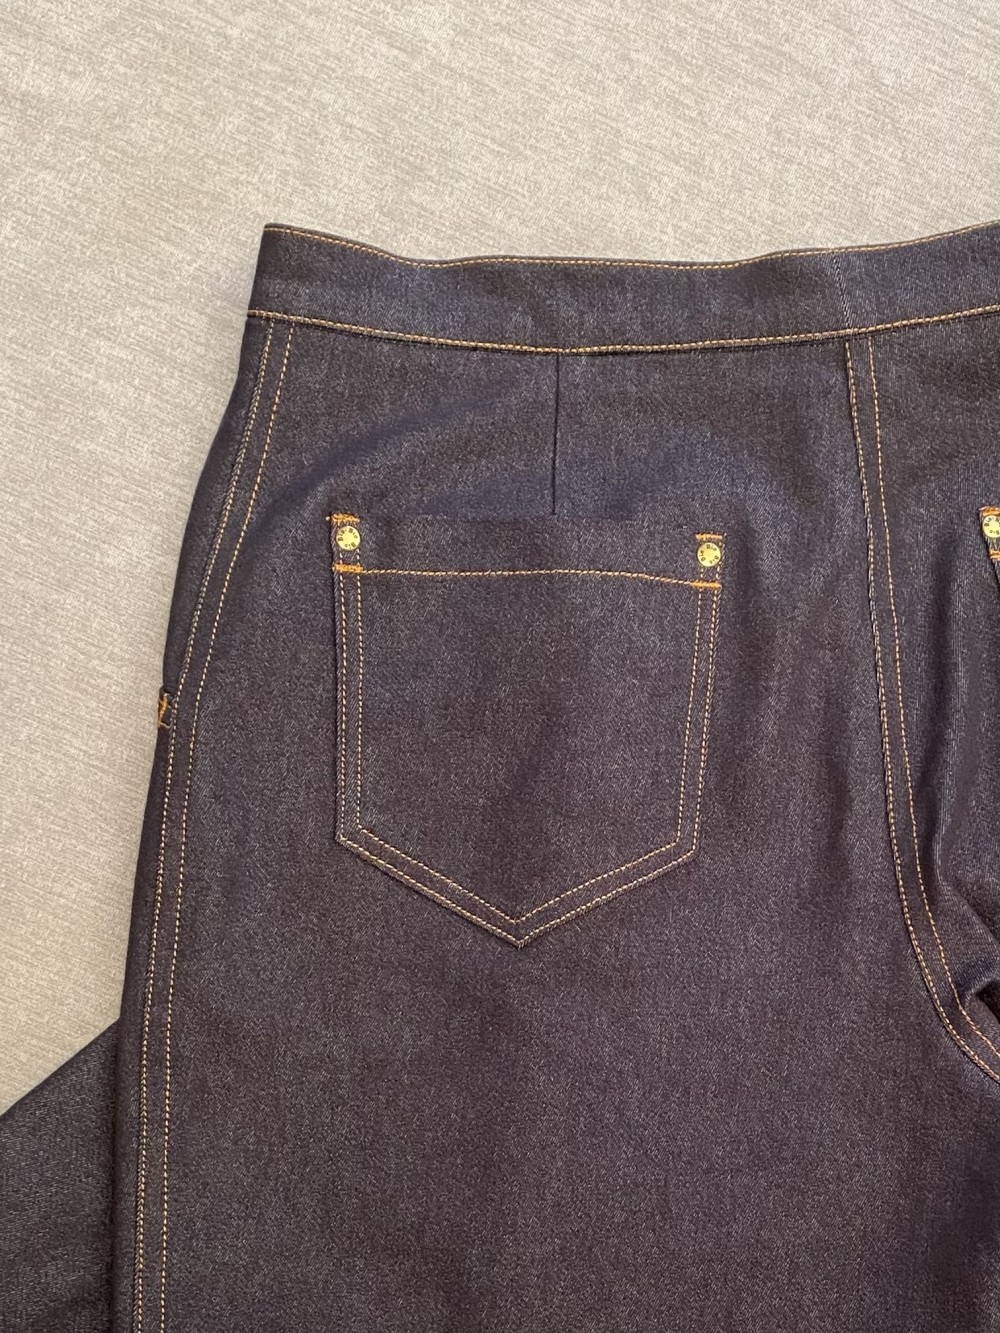 Джинсы по выкройке брюк из городской коллекции «Инга» фото